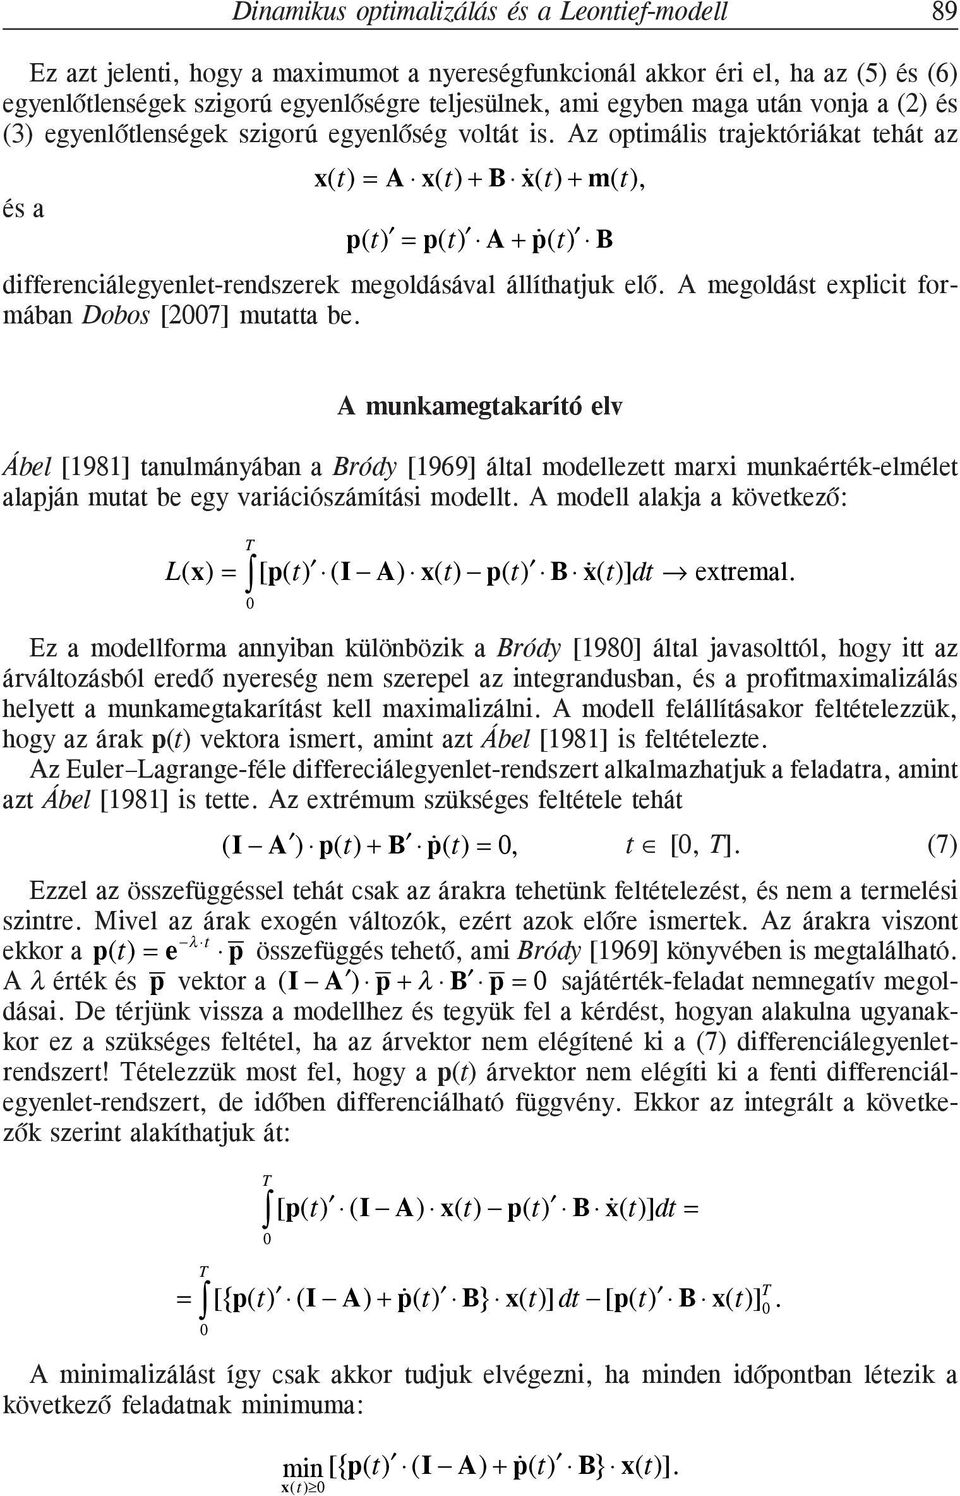 Az opimális rajekóriáka ehá az és a () = A () + B () + m(), p() = p() A + p () B differenciálegyenle-rendszerek megoldásával állíhajuk elõ. A megoldás eplici formában Dobos [27] muaa be.